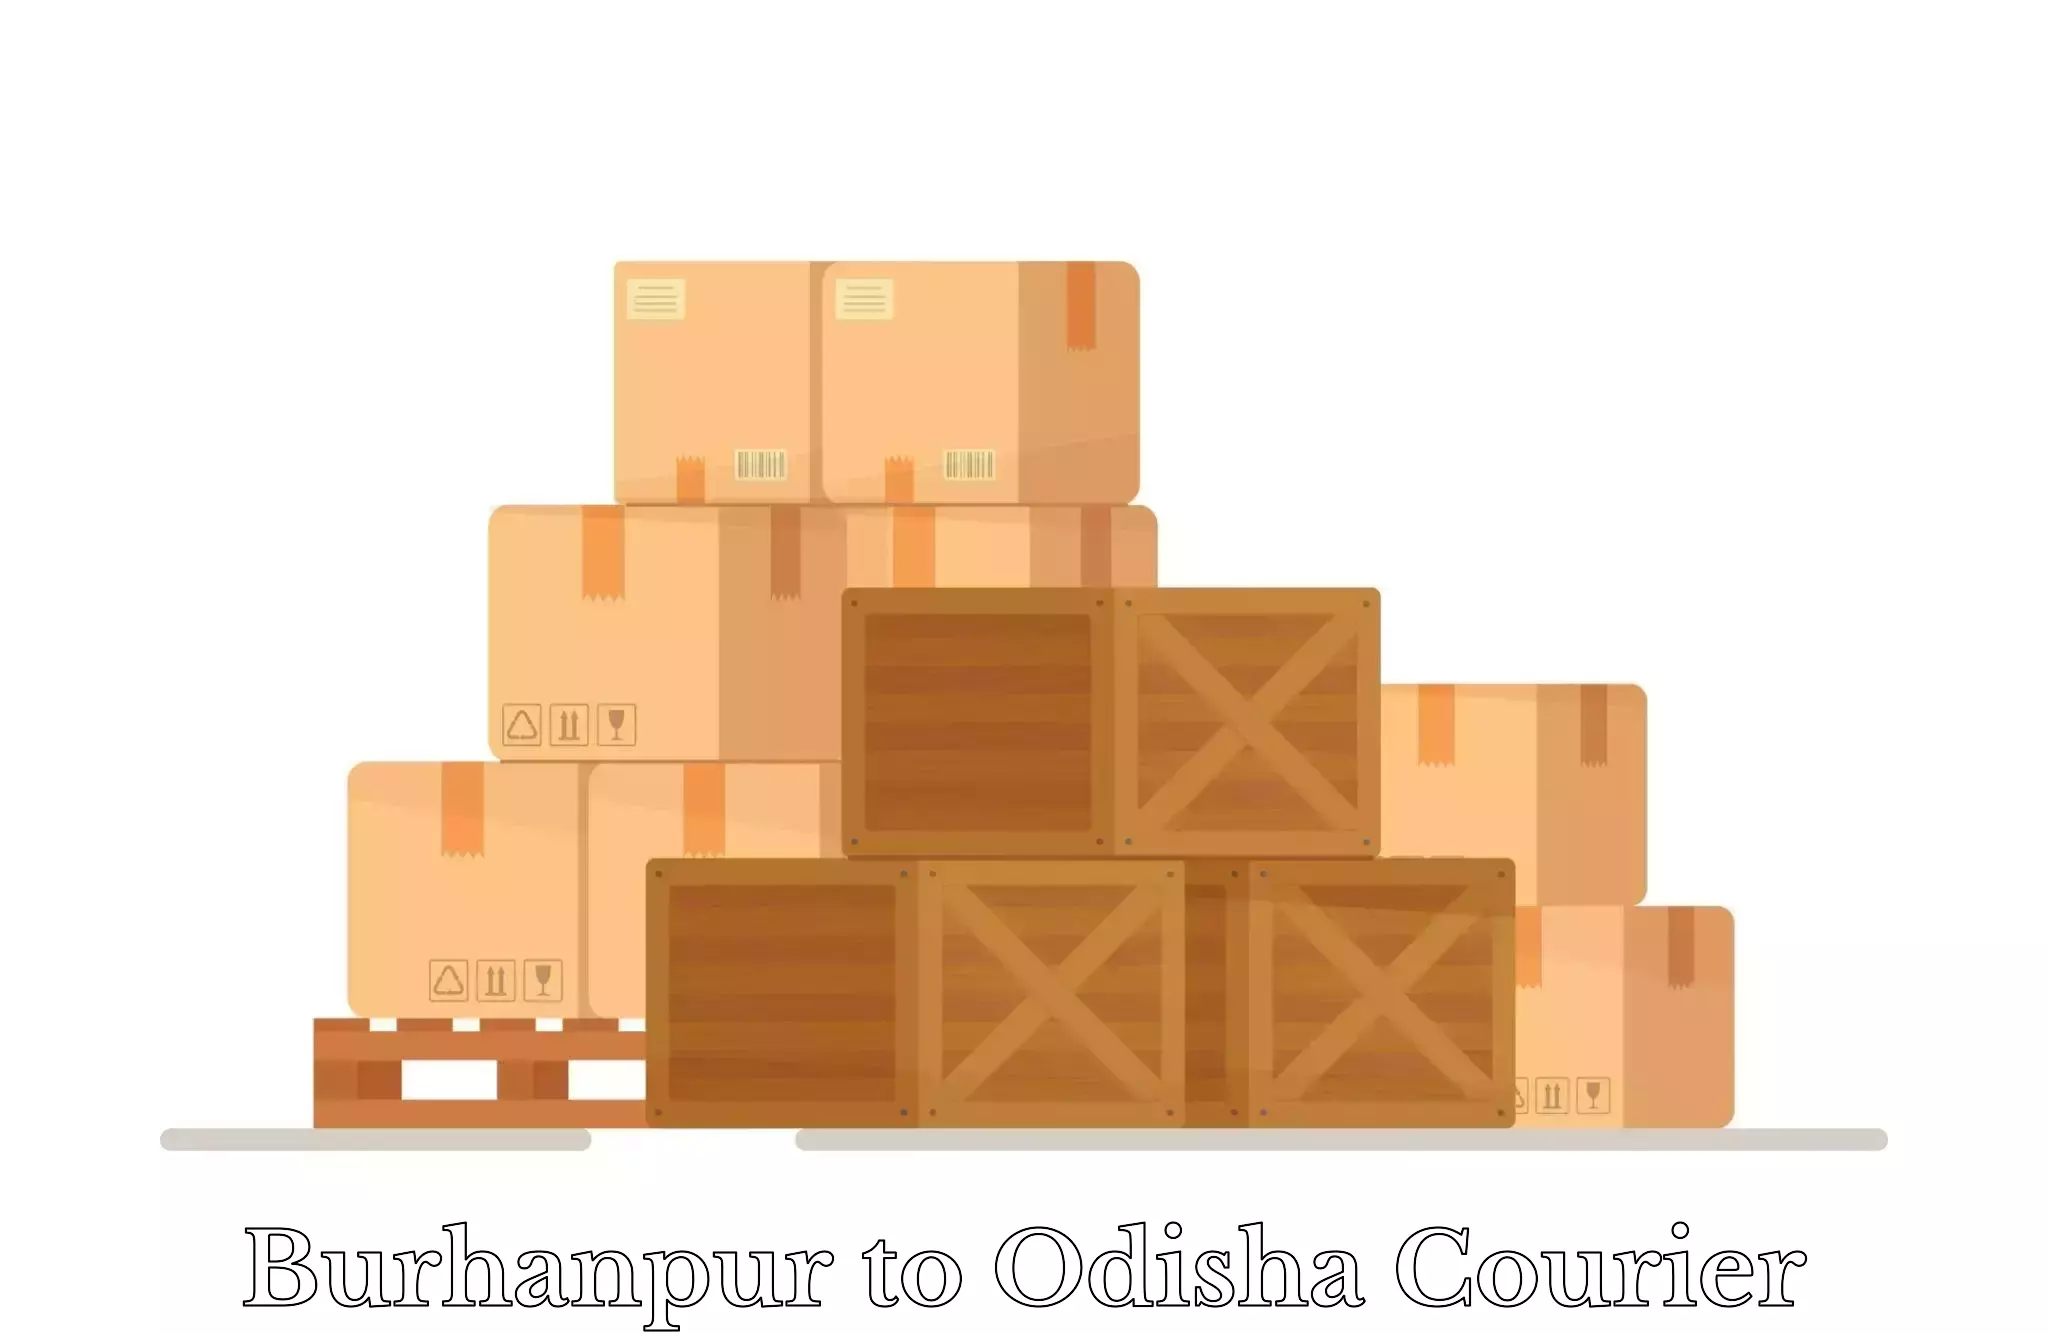 Luggage transport logistics in Burhanpur to Baripada